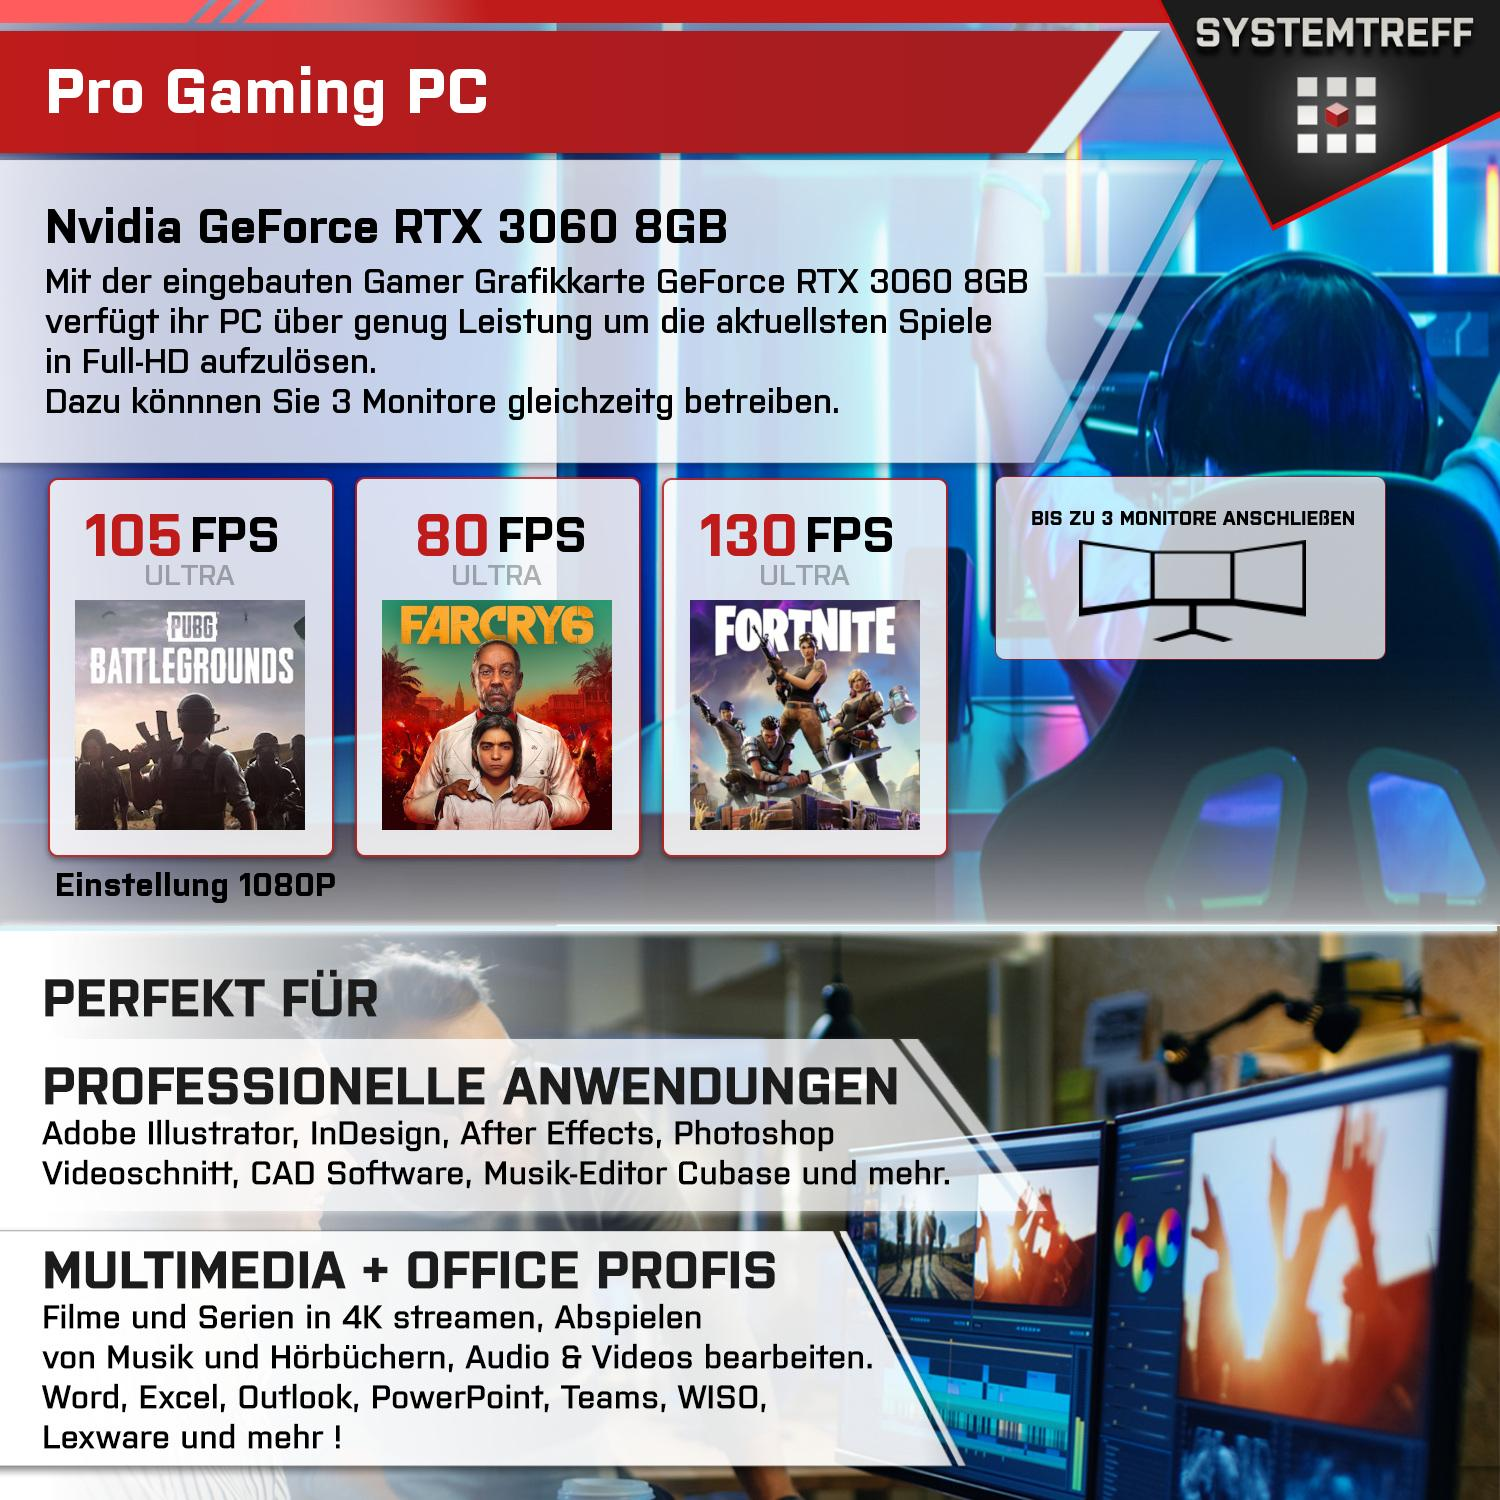 SYSTEMTREFF Gaming Komplett GDDR6, GB GeForce 5 5500 GB 3060 GB 1000 AMD PC 16 Prozessor, Komplett Nvidia mit 8 mSSD, RTX RAM, 5500, Ryzen 8GB